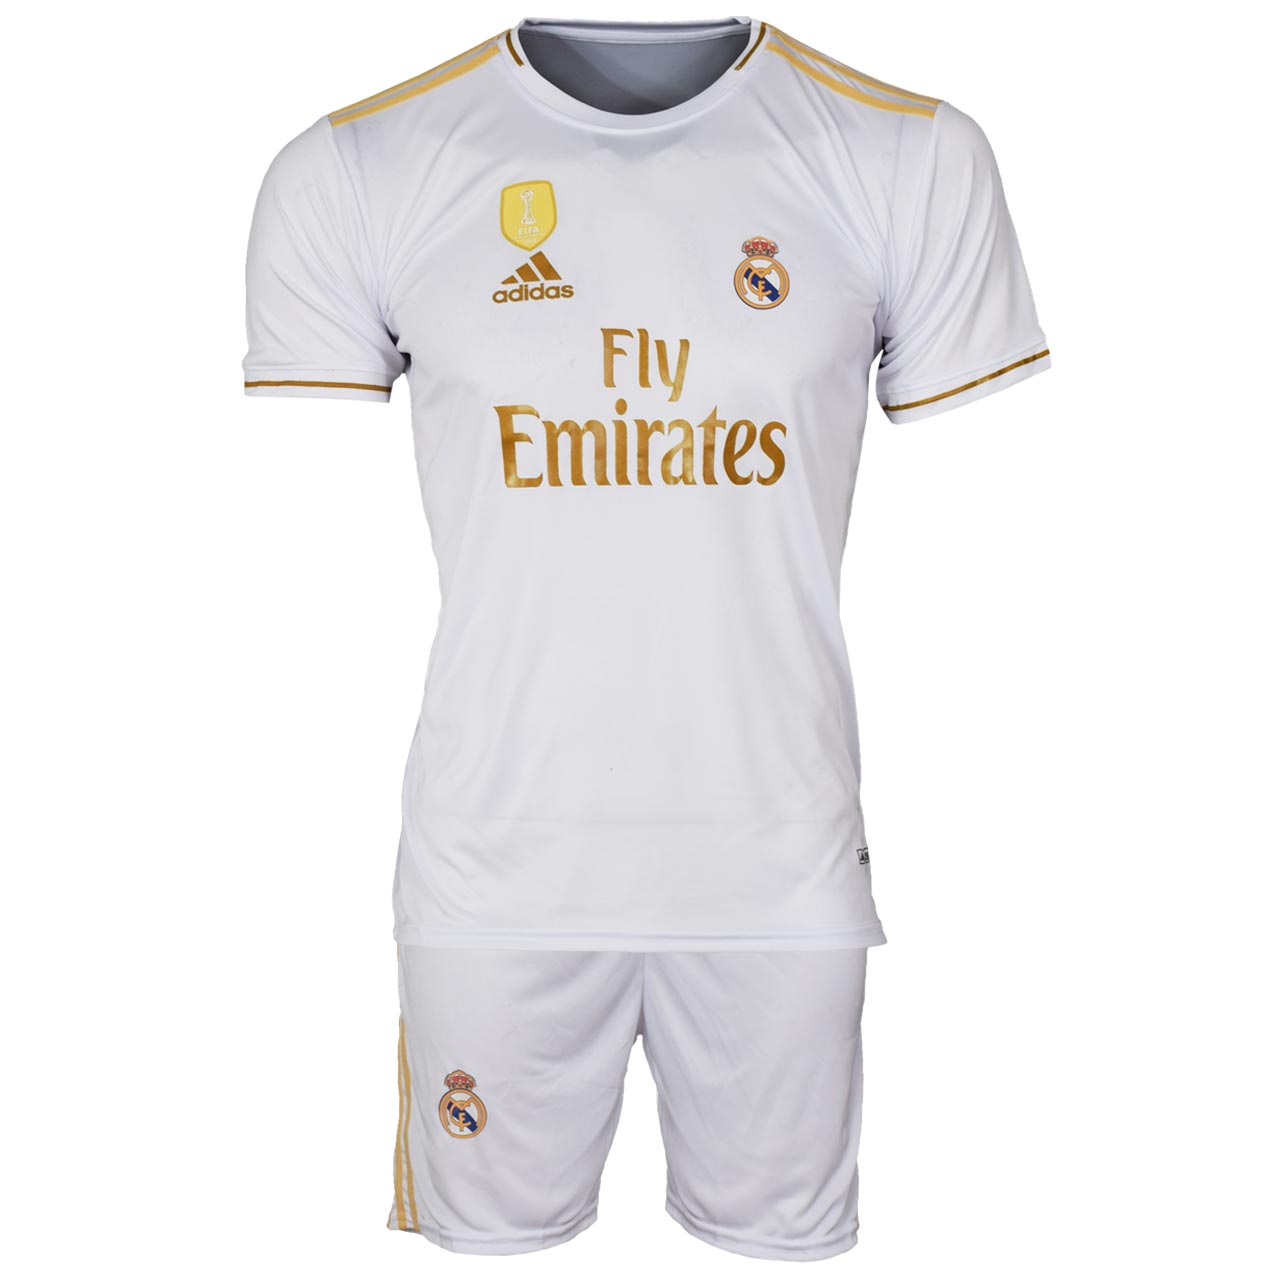 ست پیراهن و شورت ورزشی مردانه طرح رئال مادرید کد 2019-20  رنگ سفید